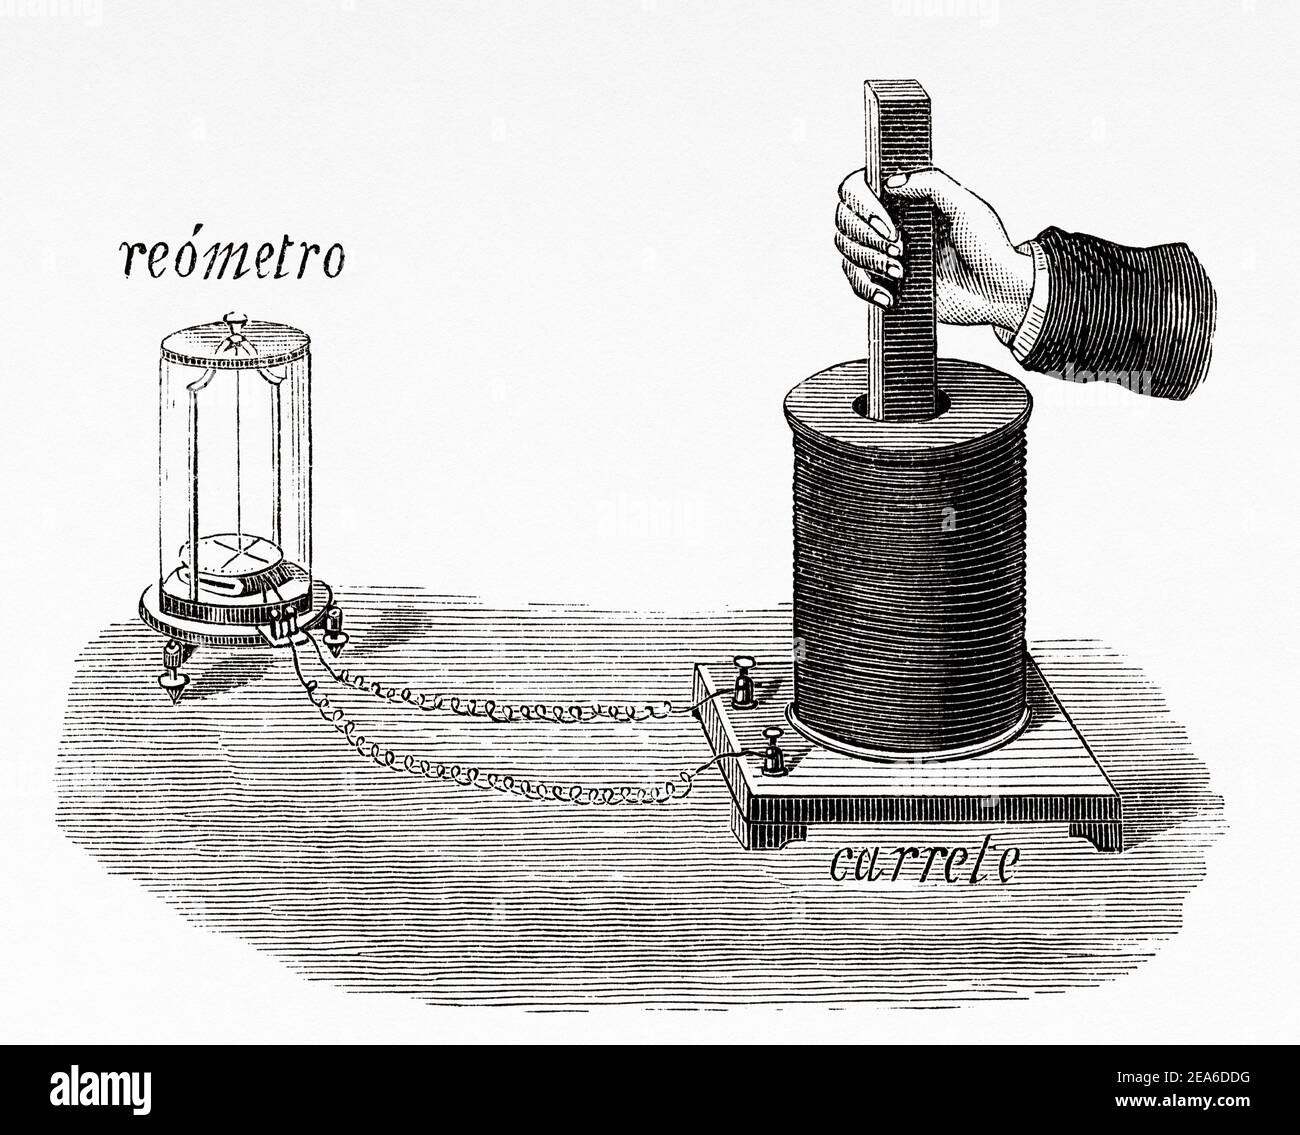 Elektromagnetische Induktion. Faradays elektromagnetisches Induktionsexperiment. Michael Faraday (1791-1867). Erfindungen des neunzehnten Jahrhunderts. Alte 19th Jahrhundert gravierte Illustration von El Mundo Ilustrado 1879 Stockfoto